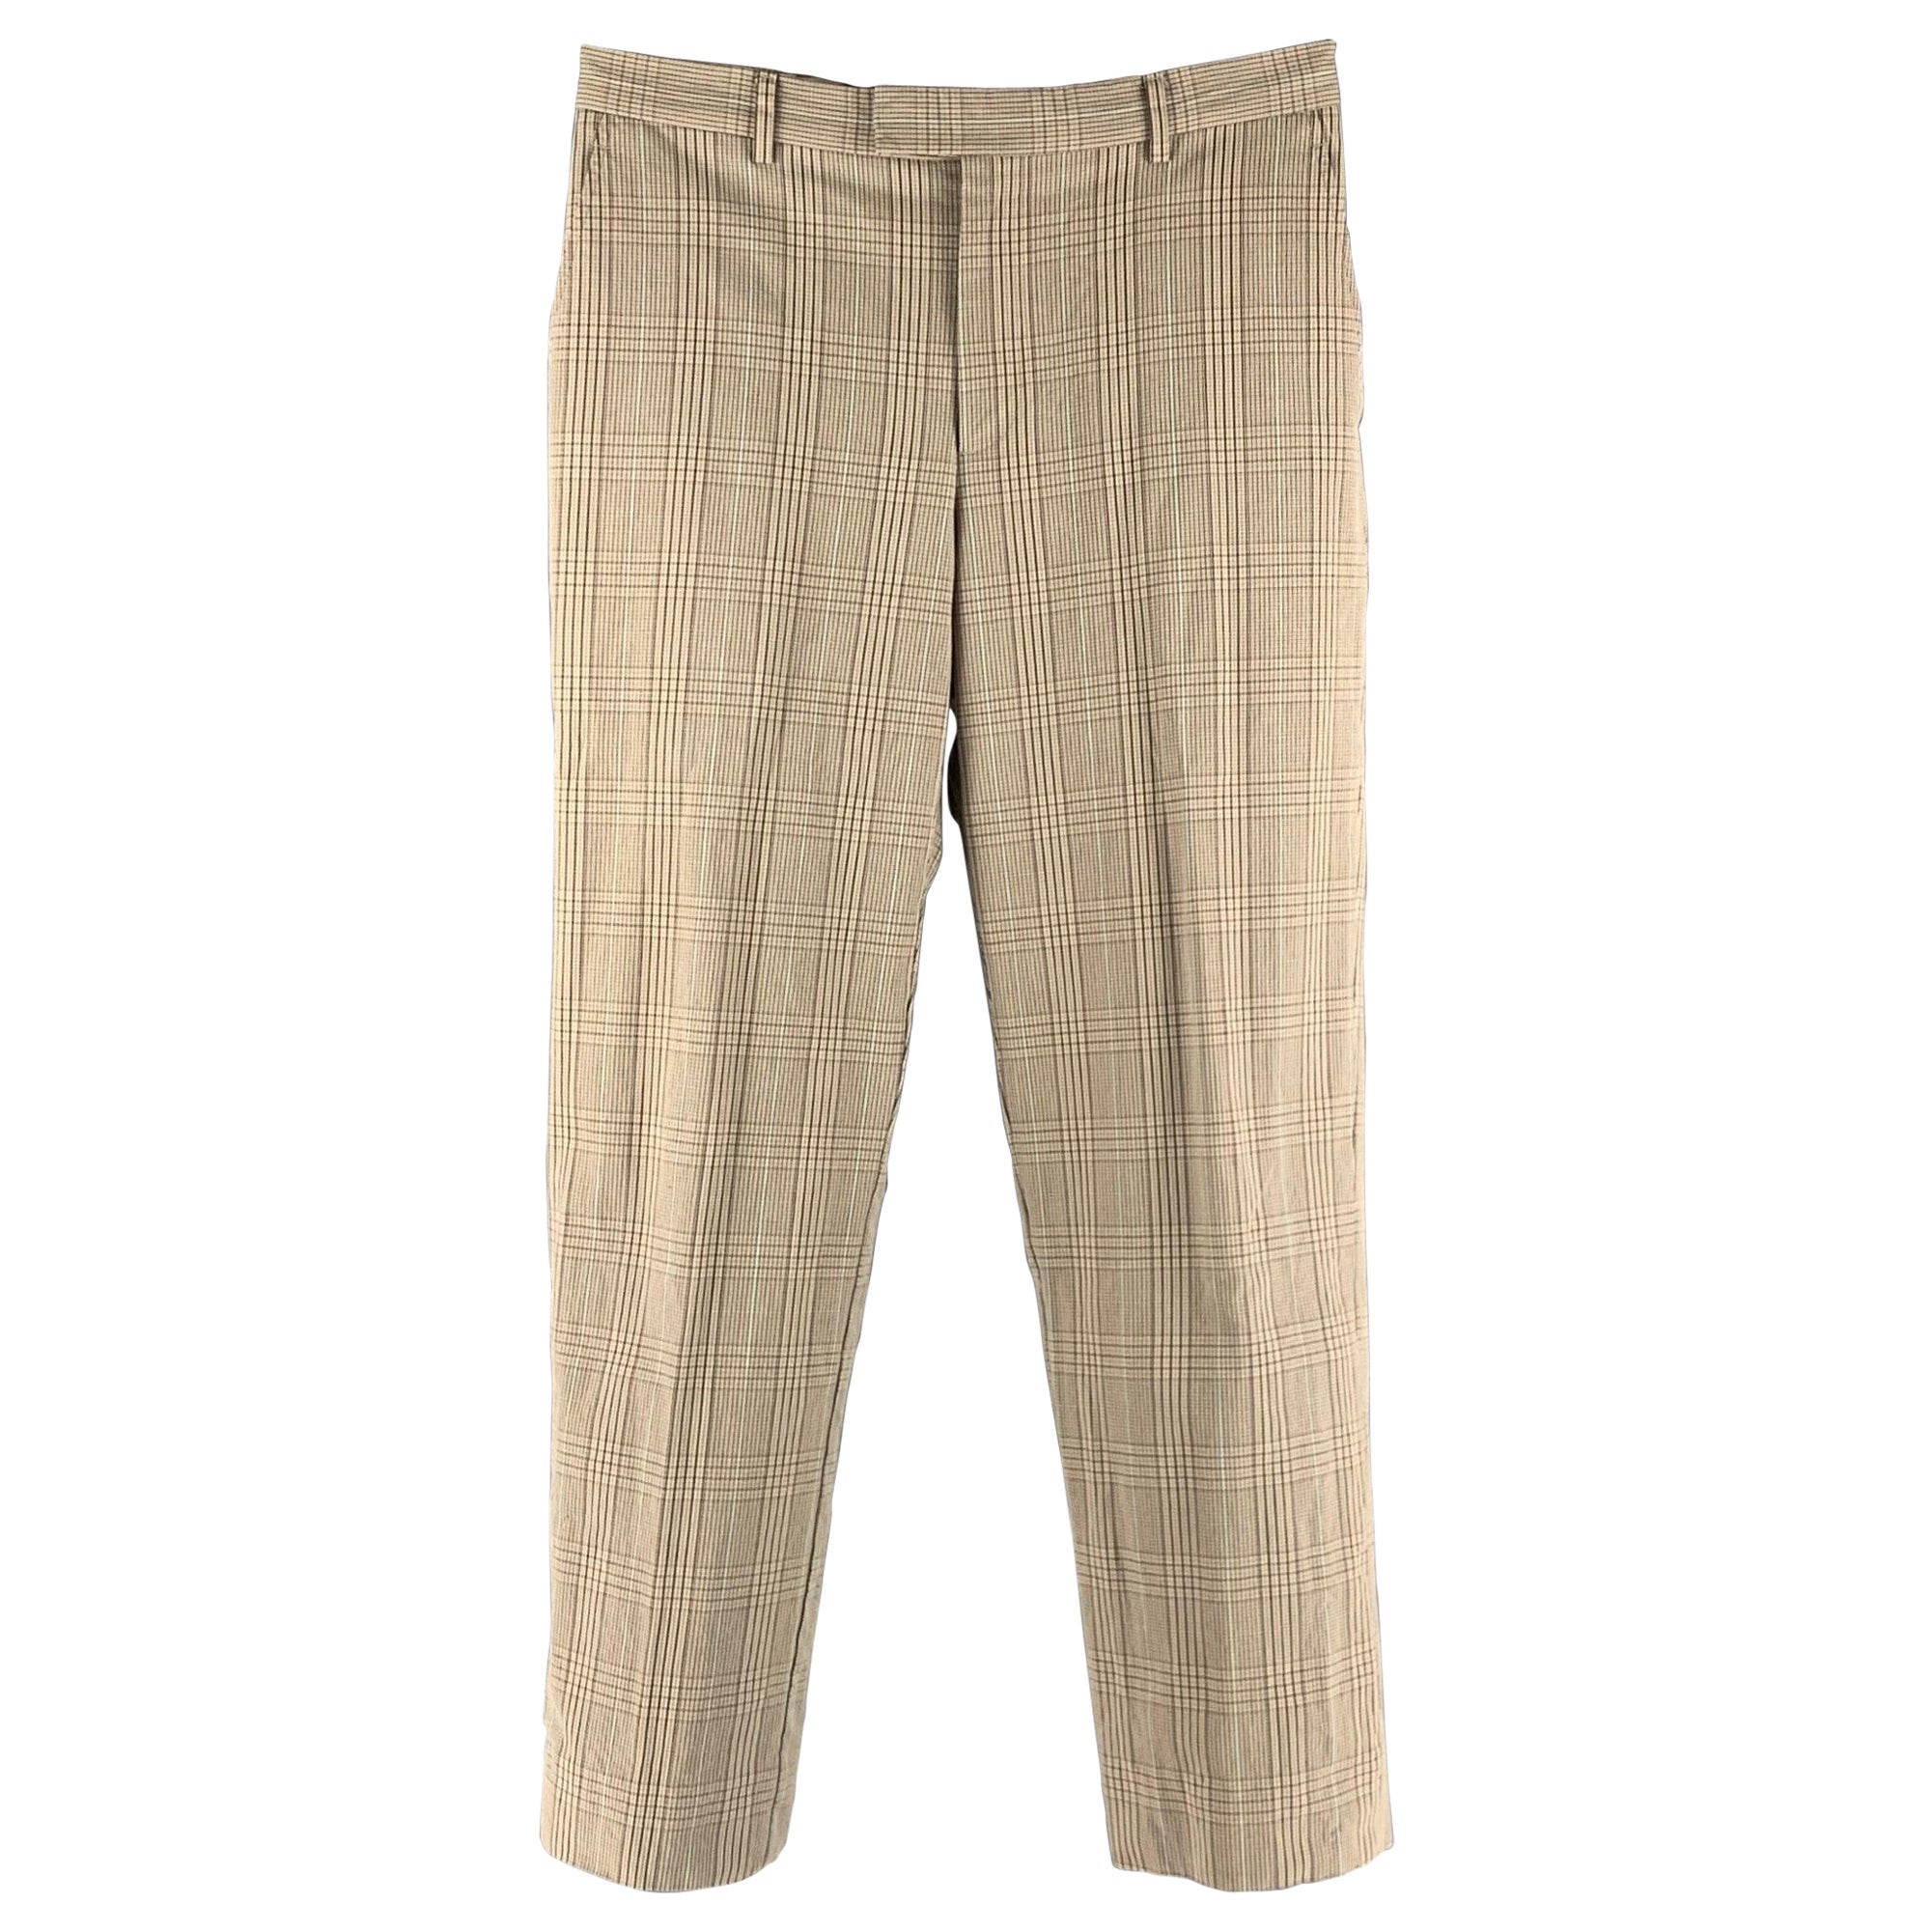 PAUL SMITH Size 30 Beige Brown Plaid Cotton Flat Front Dress Pants